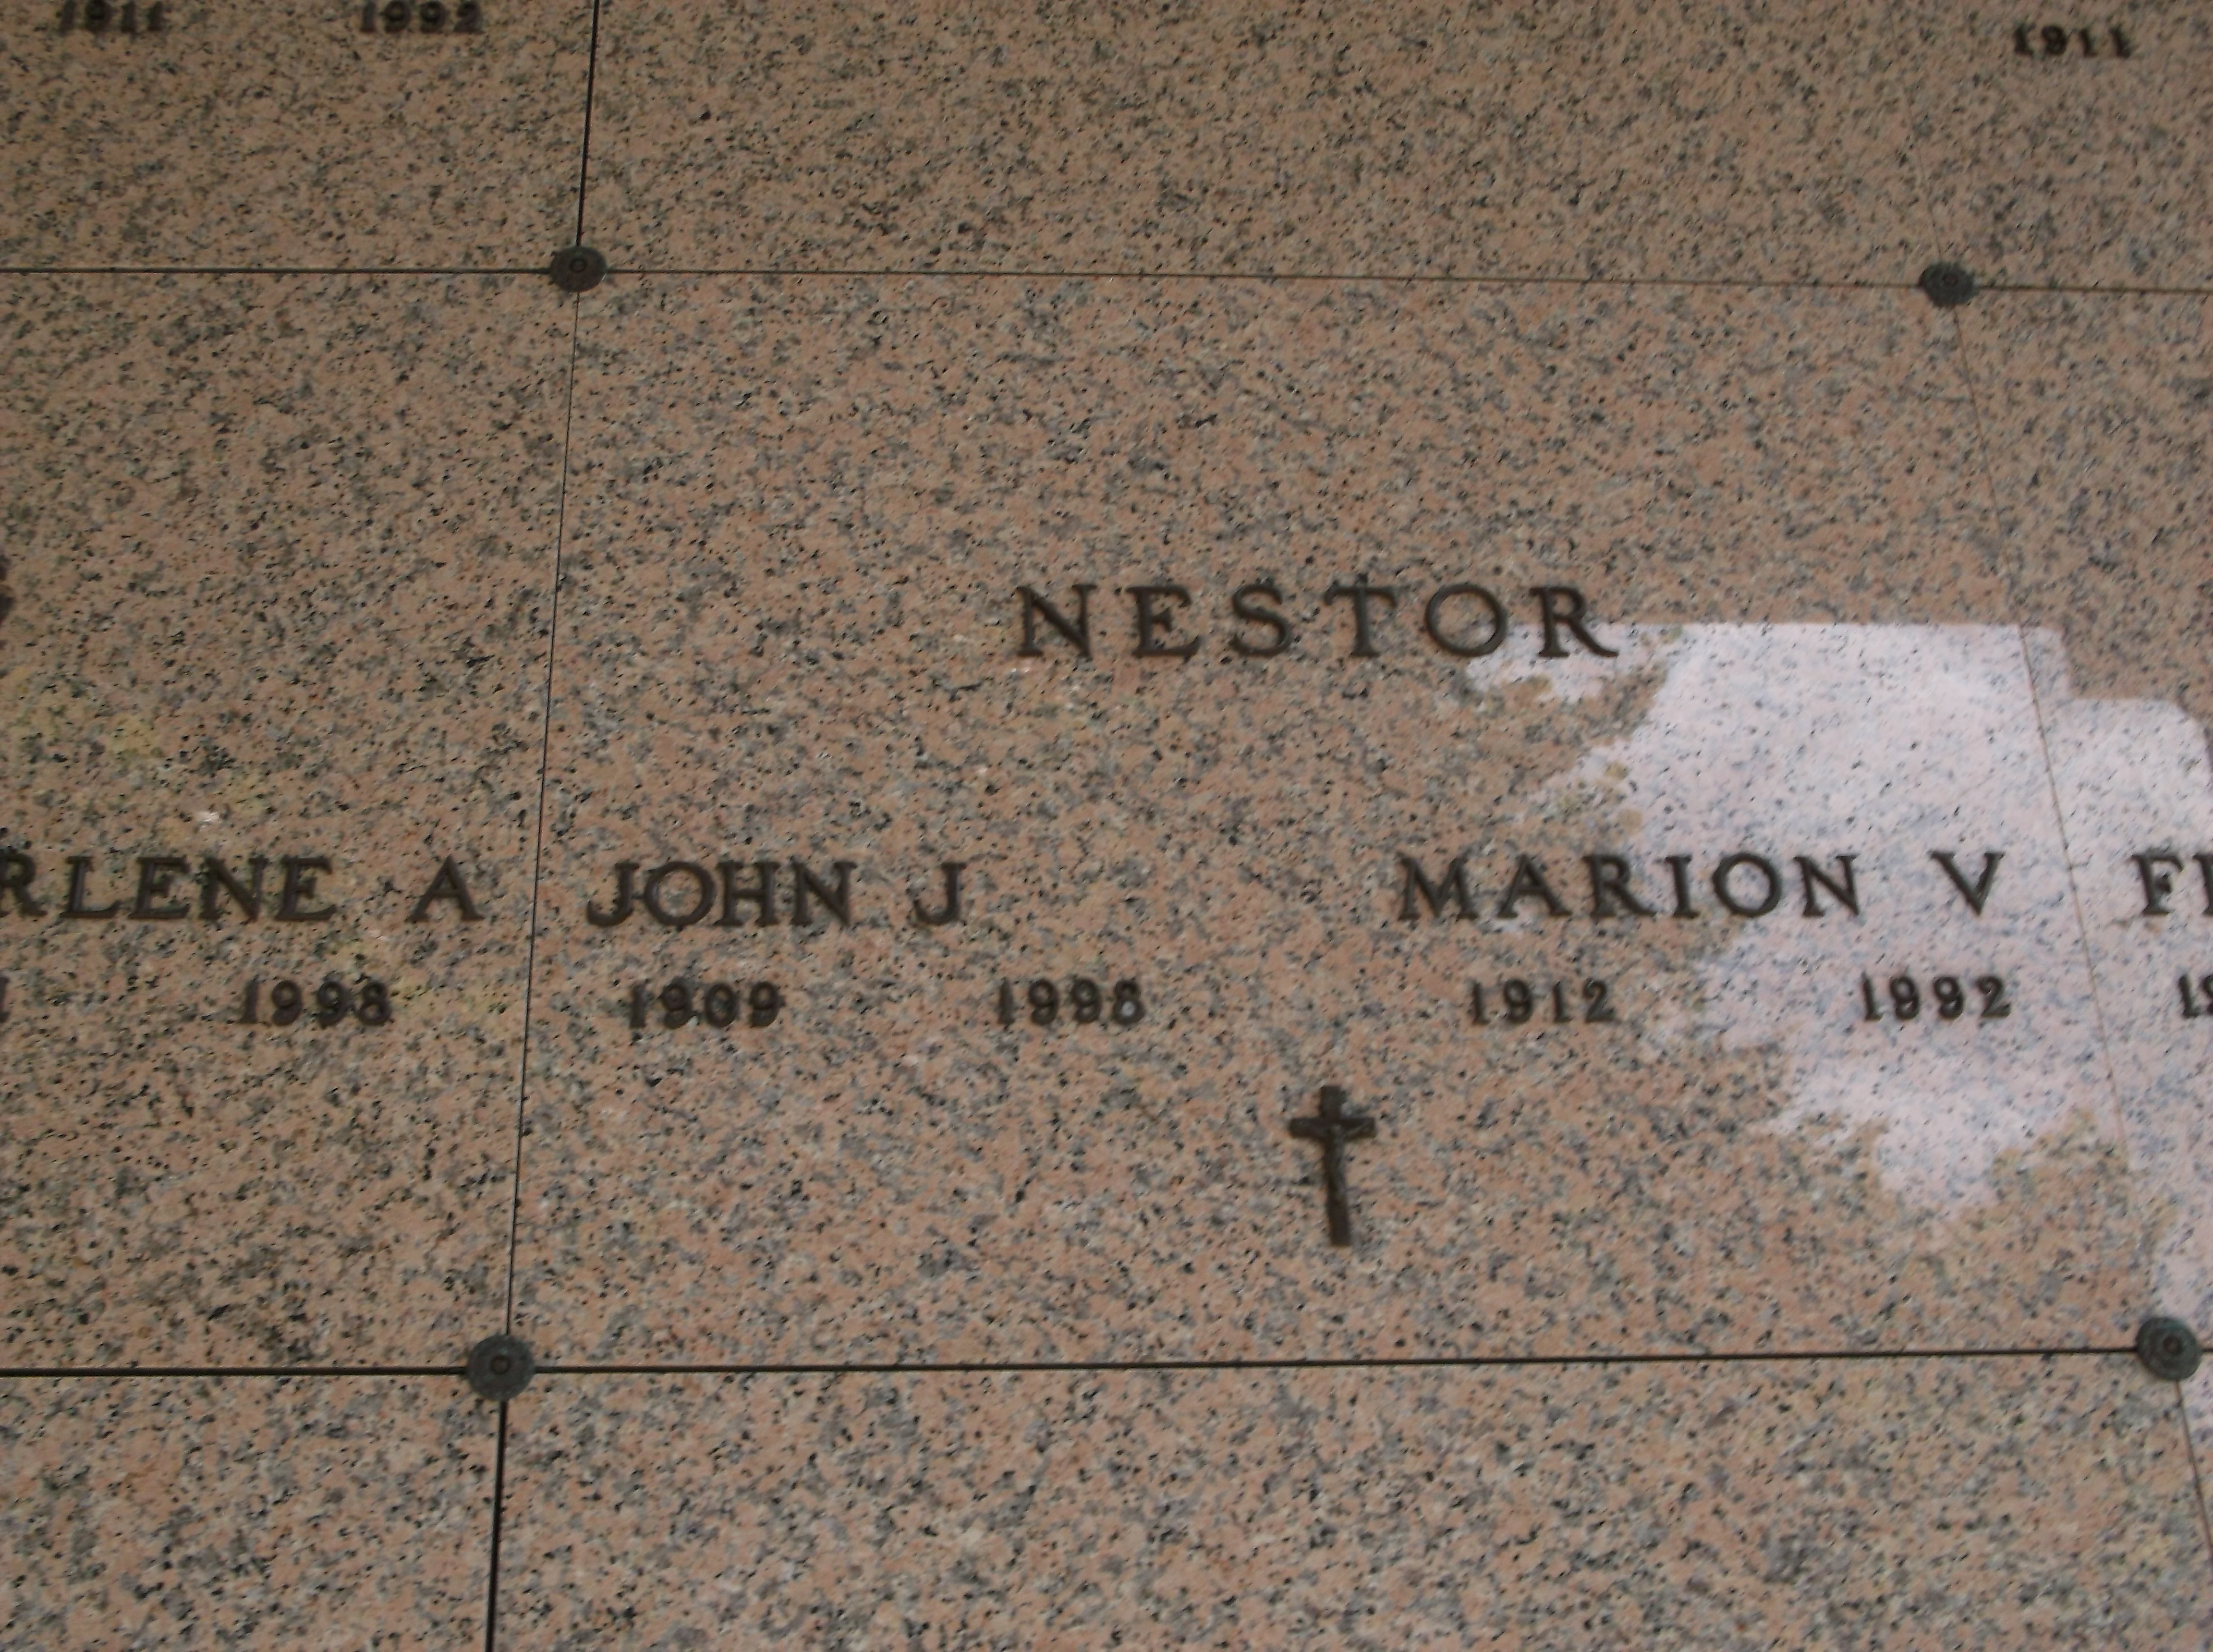 John J Nestor